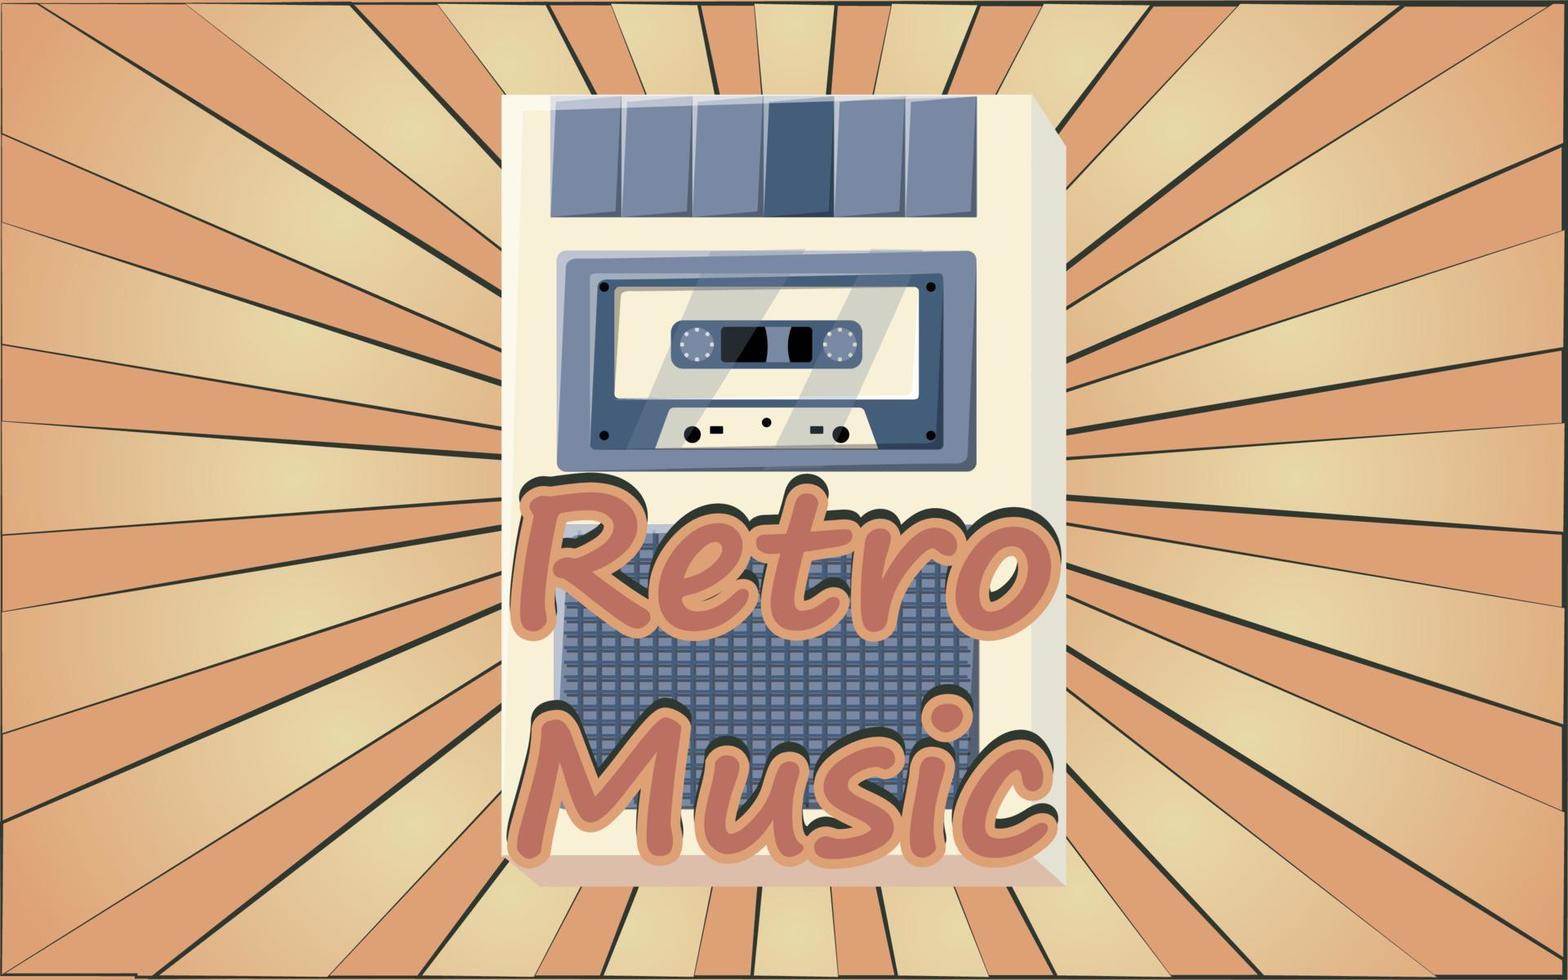 oud retro wijnoogst hipster poster met stem opnemer met muziek- audio plakband cassette voor stem opname van jaren 70, jaren 80, 90s tegen de achtergrond van de bruin stralen van de zon. vector illustratie